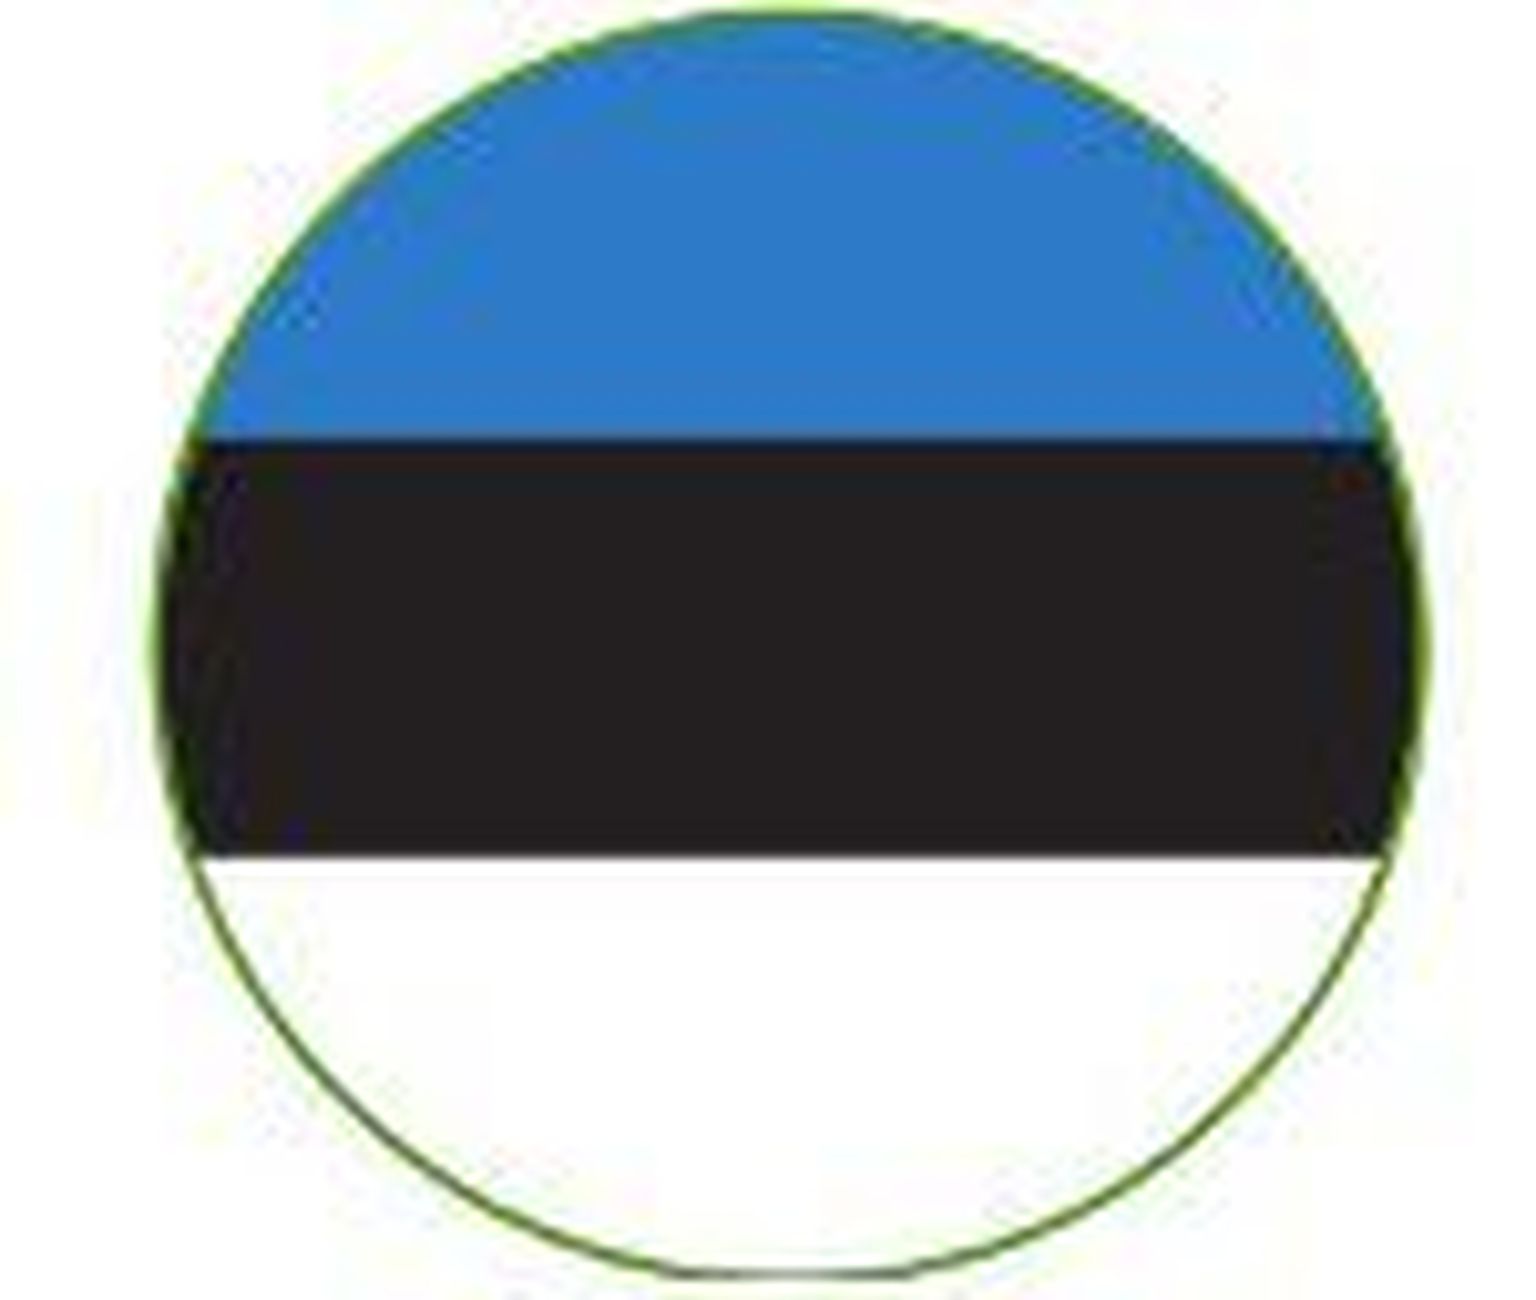 Eesti lipumärk on päritolumärk, mis näitab, et toote on valmistanud eestimaalased Eesti toiduainetööstuse ettevõtetes eestimaalaste maitse-eelistusi ja traditsioone silmas pidades.